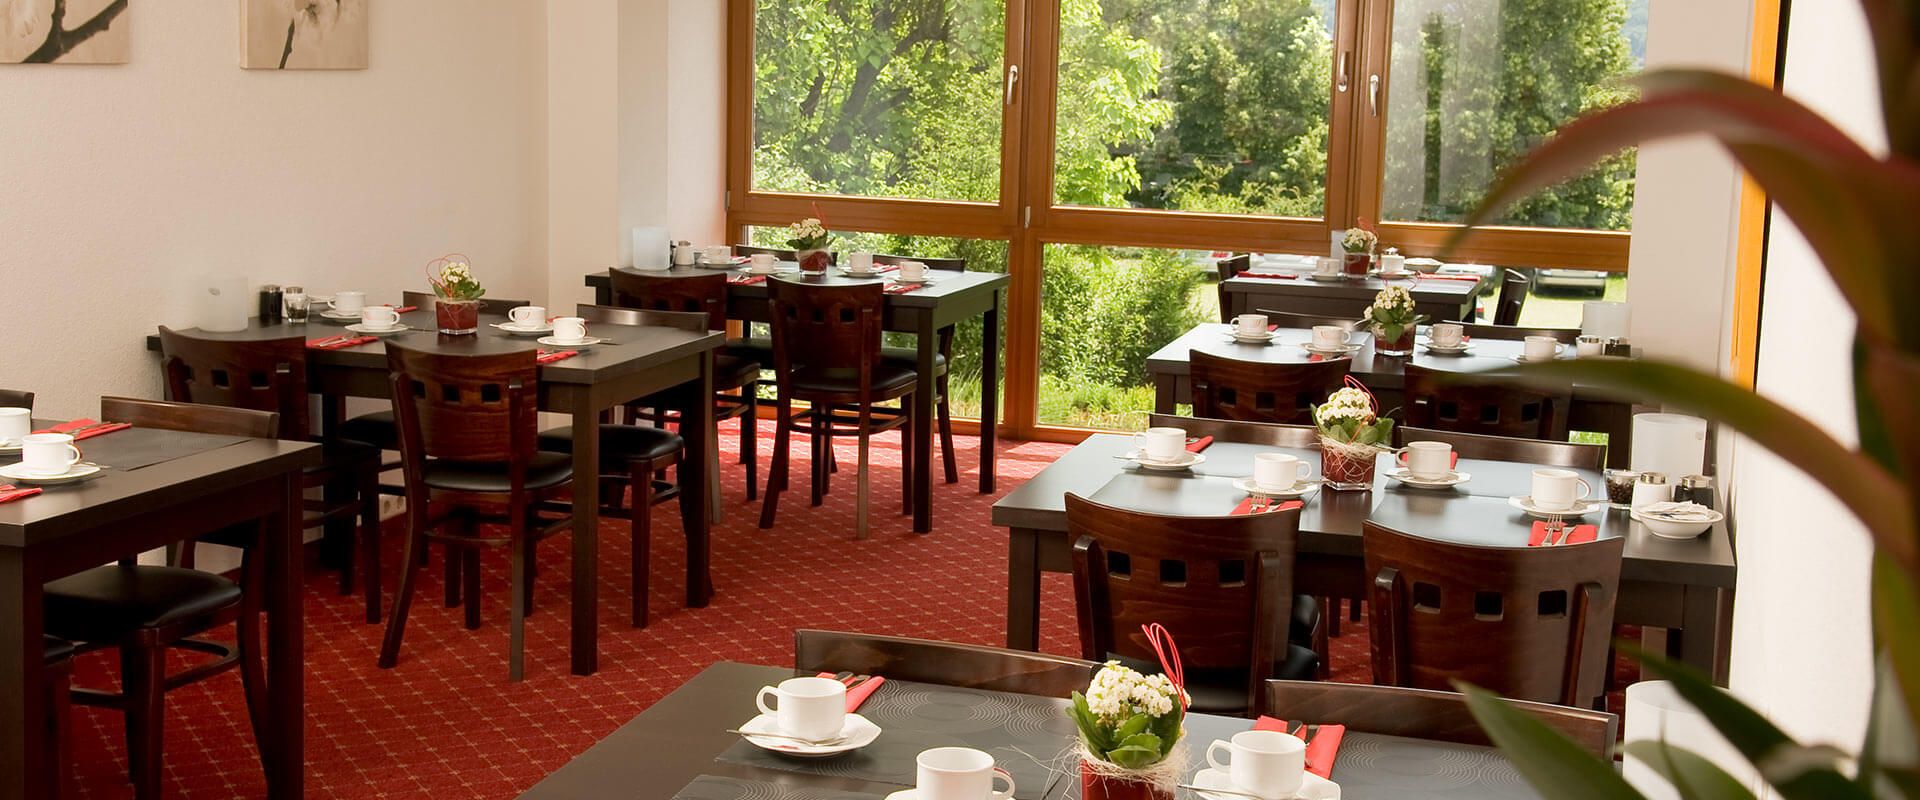 Frühstücksraum im Aqualon Hotel Schweizerblick